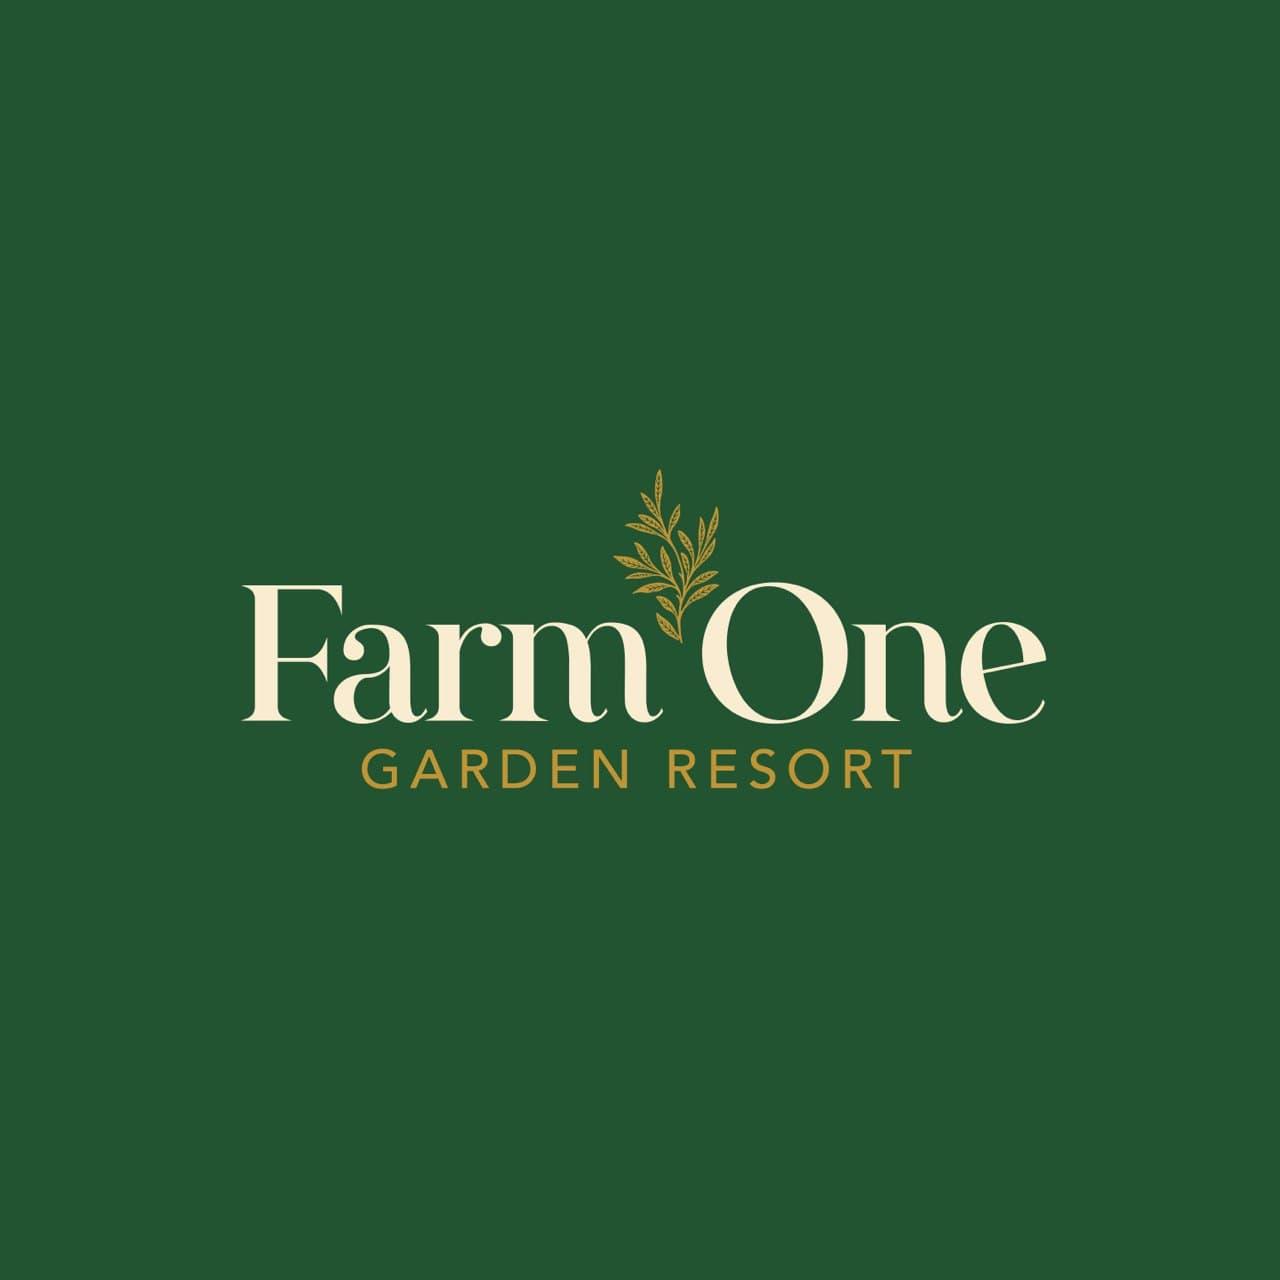 Farm One Garden Resort